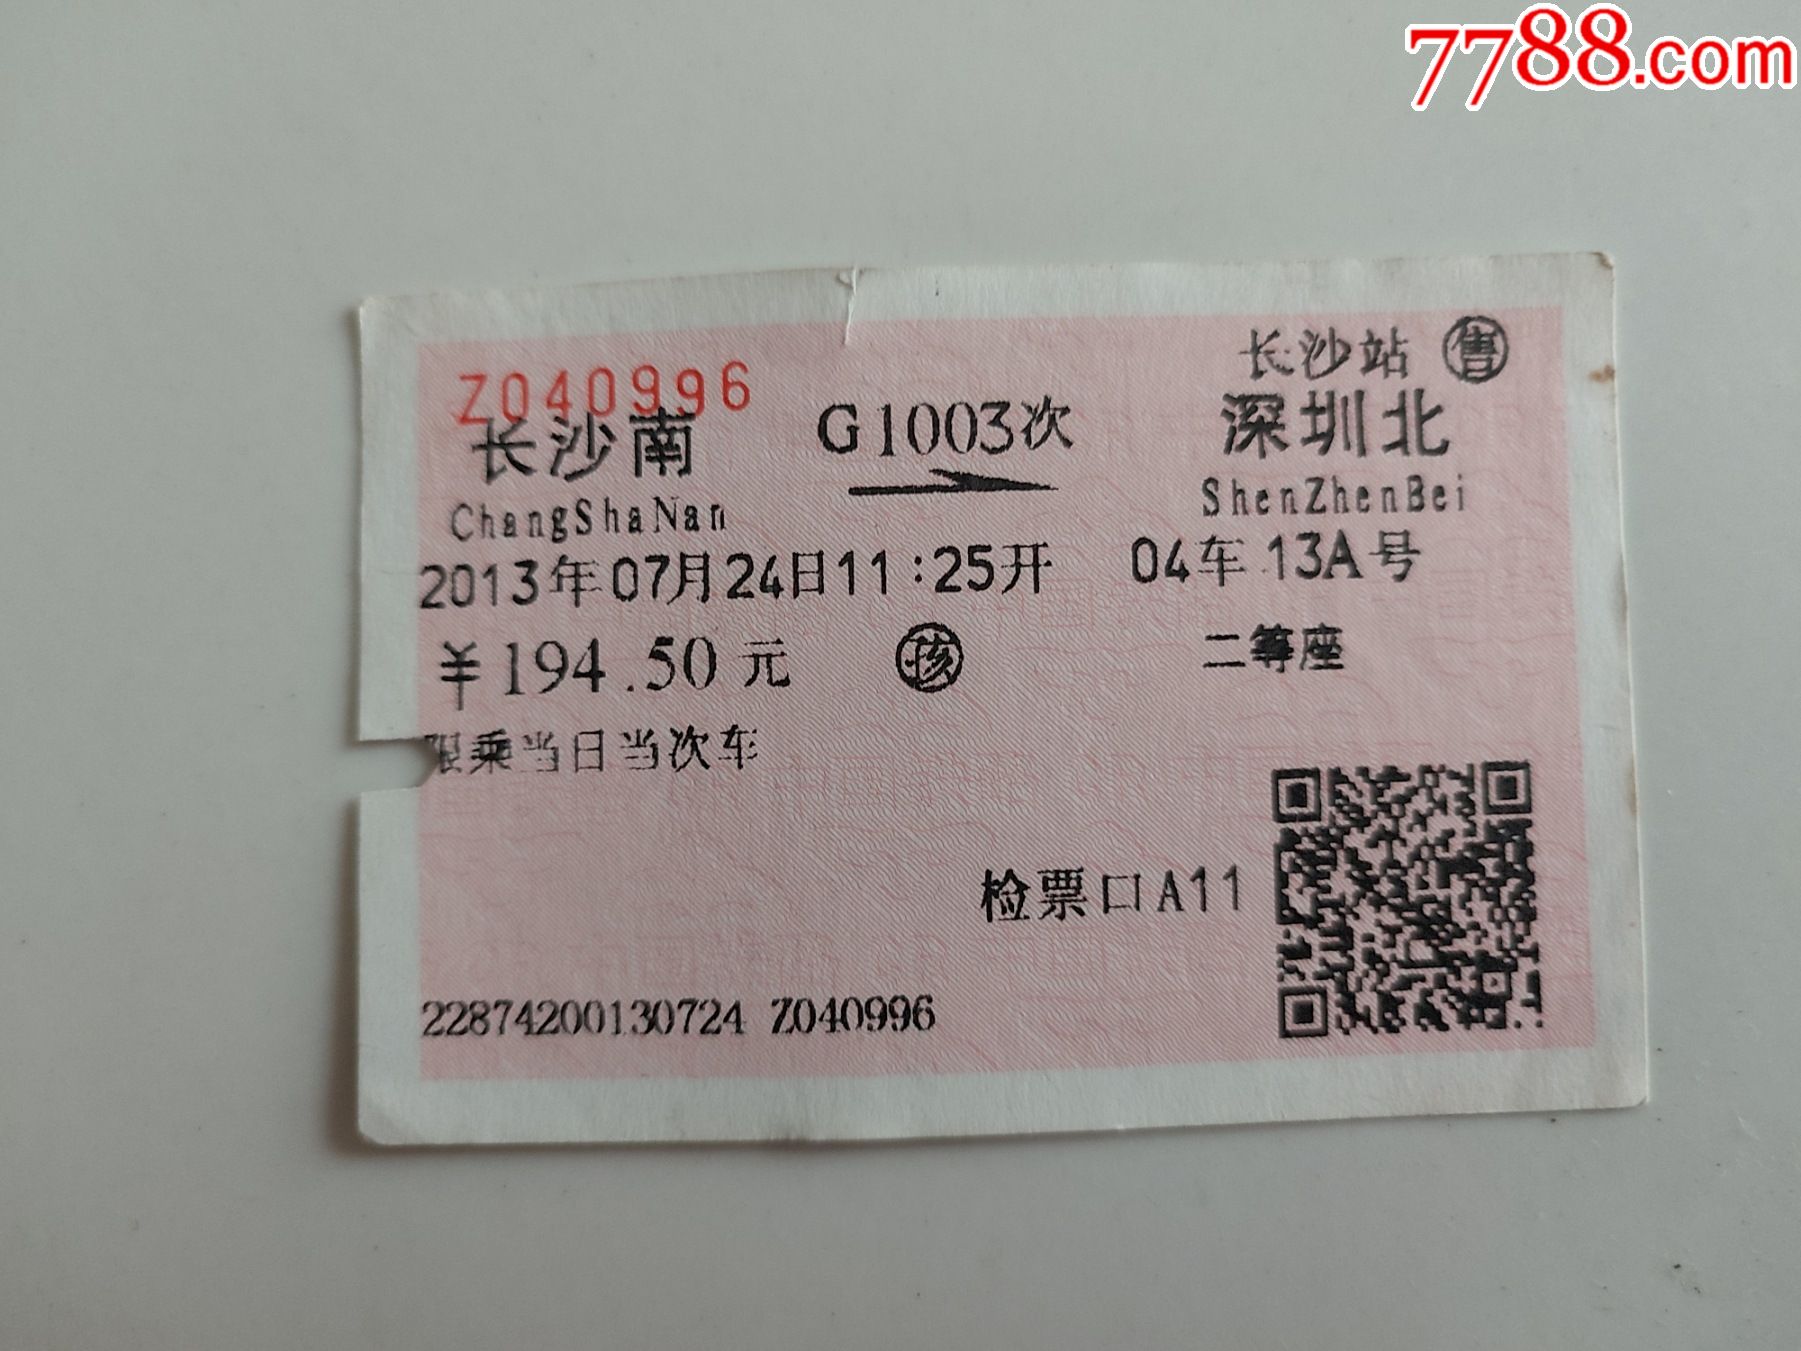 2019年春运火车票抢票时间一览表（含CDG动车组列车） - 深圳本地宝